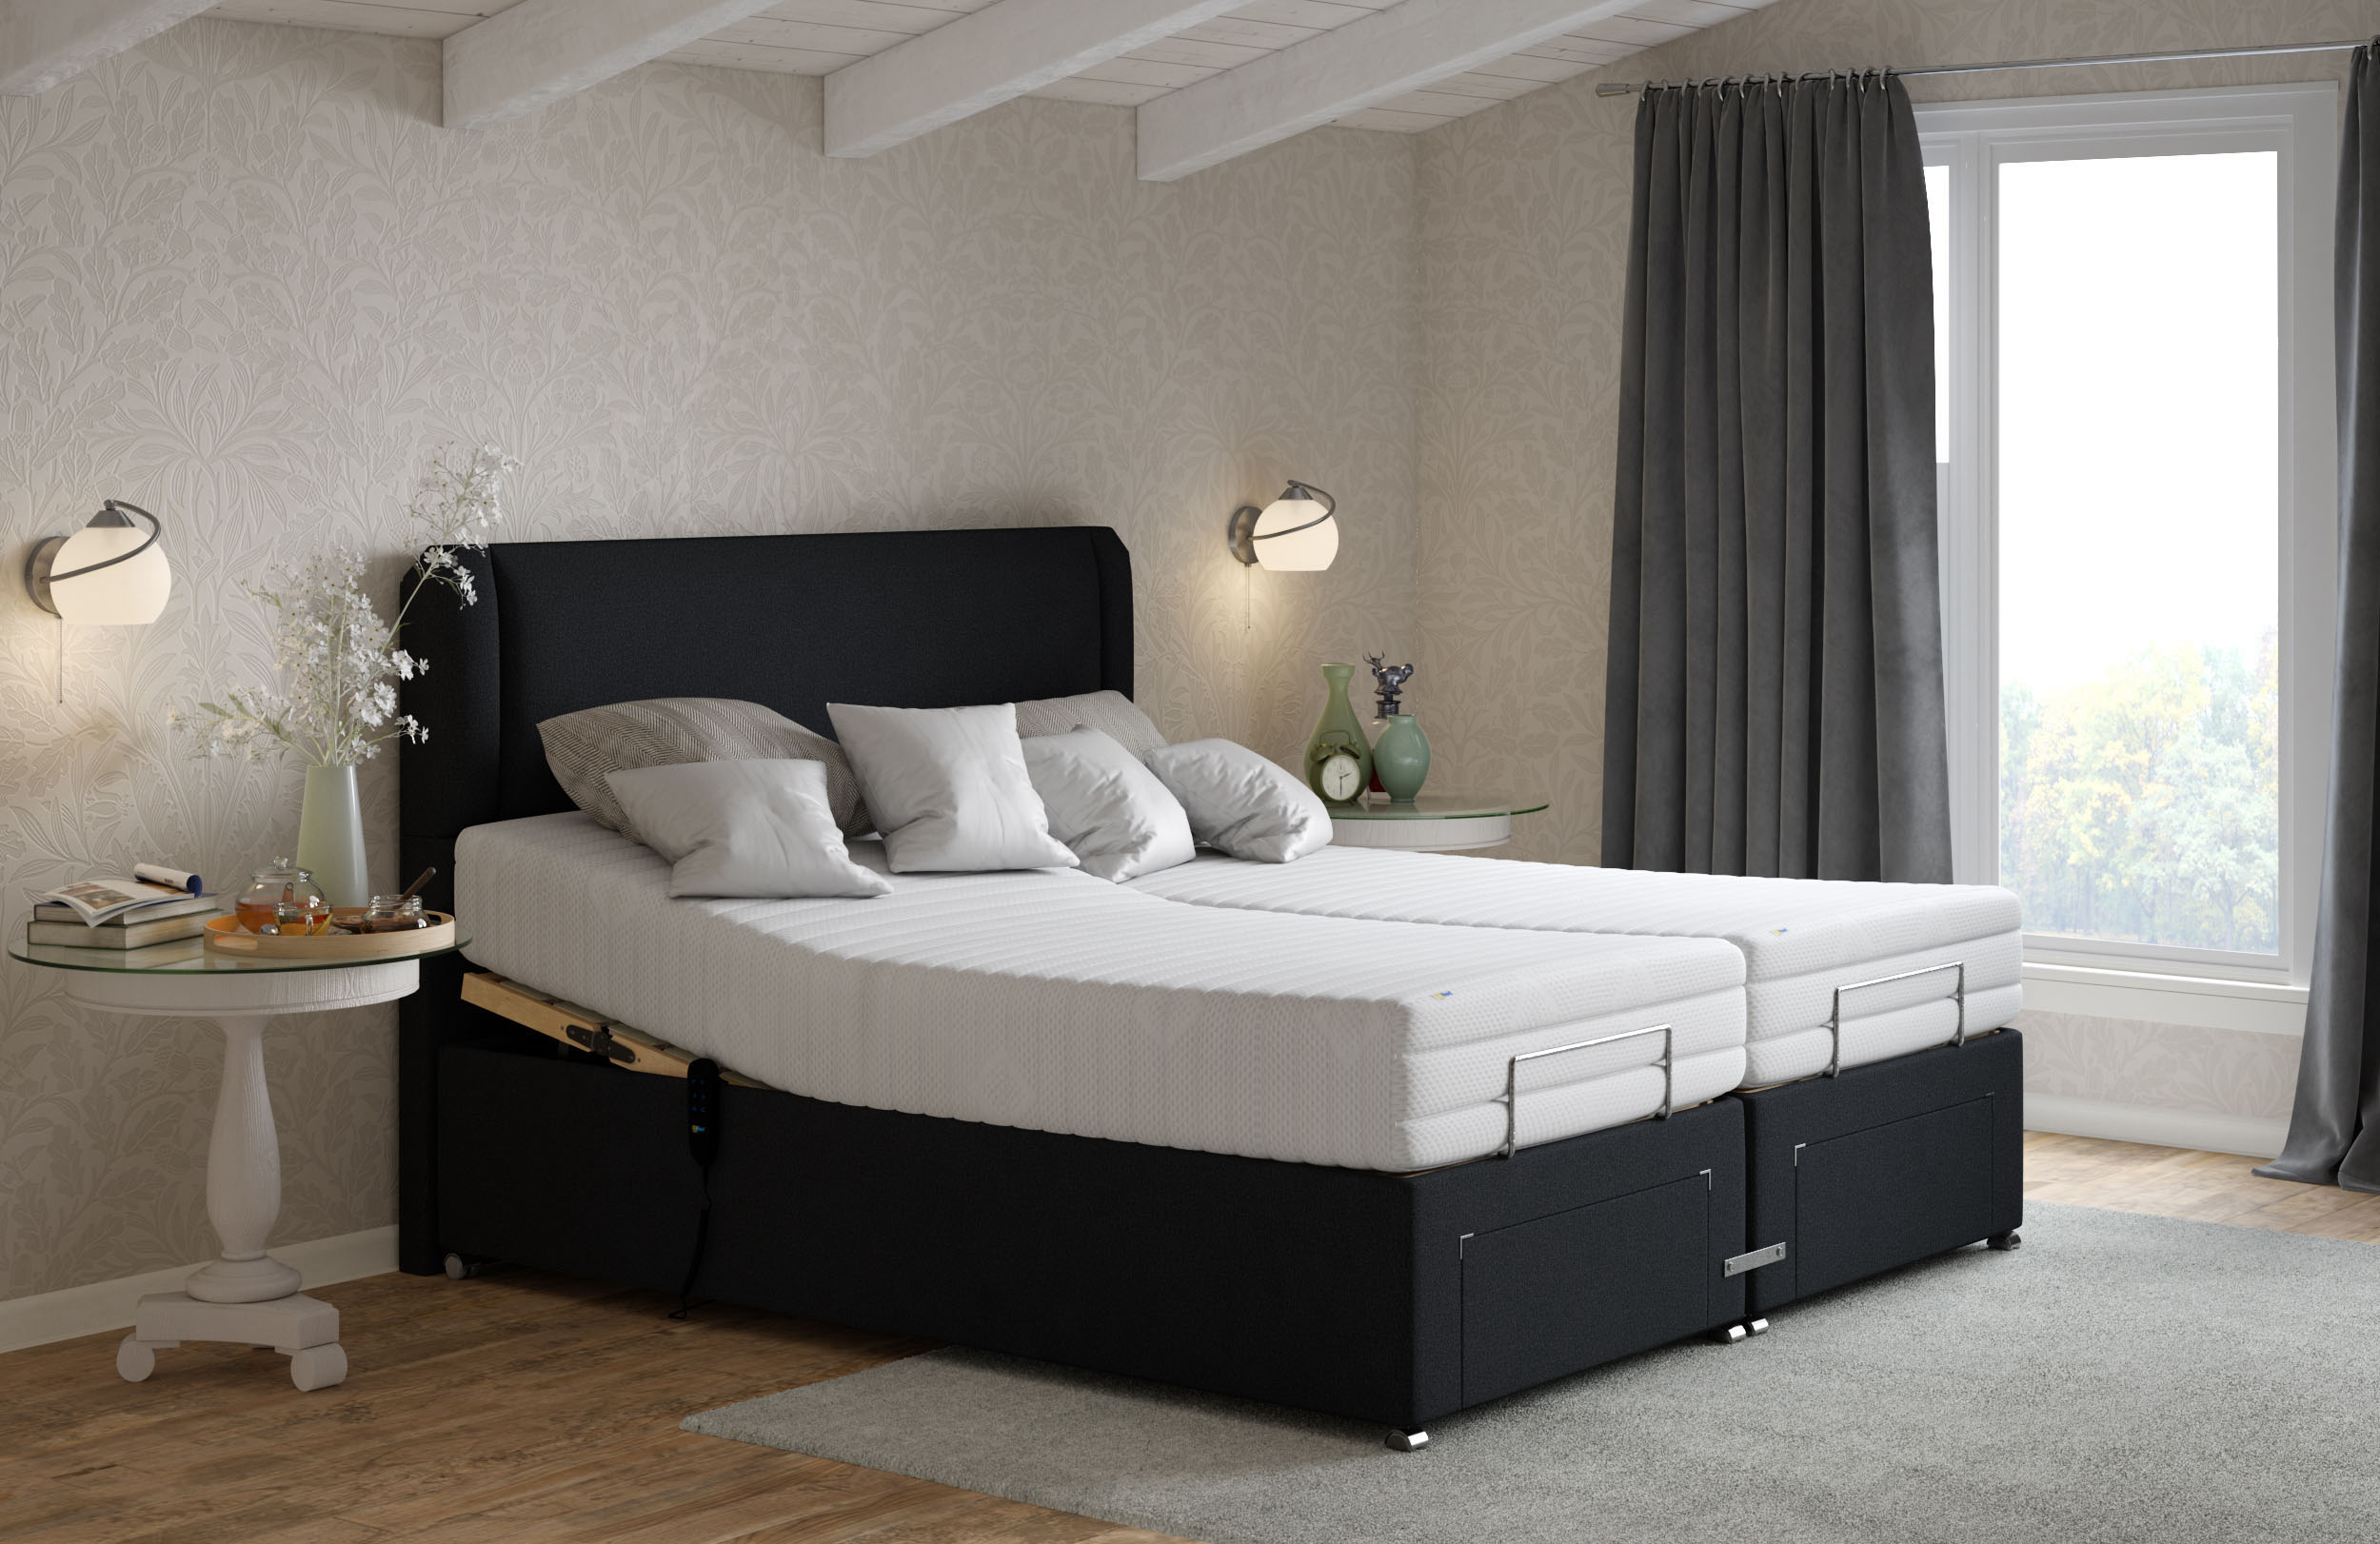 Cama tapizada ajustable en dormitorio neutral